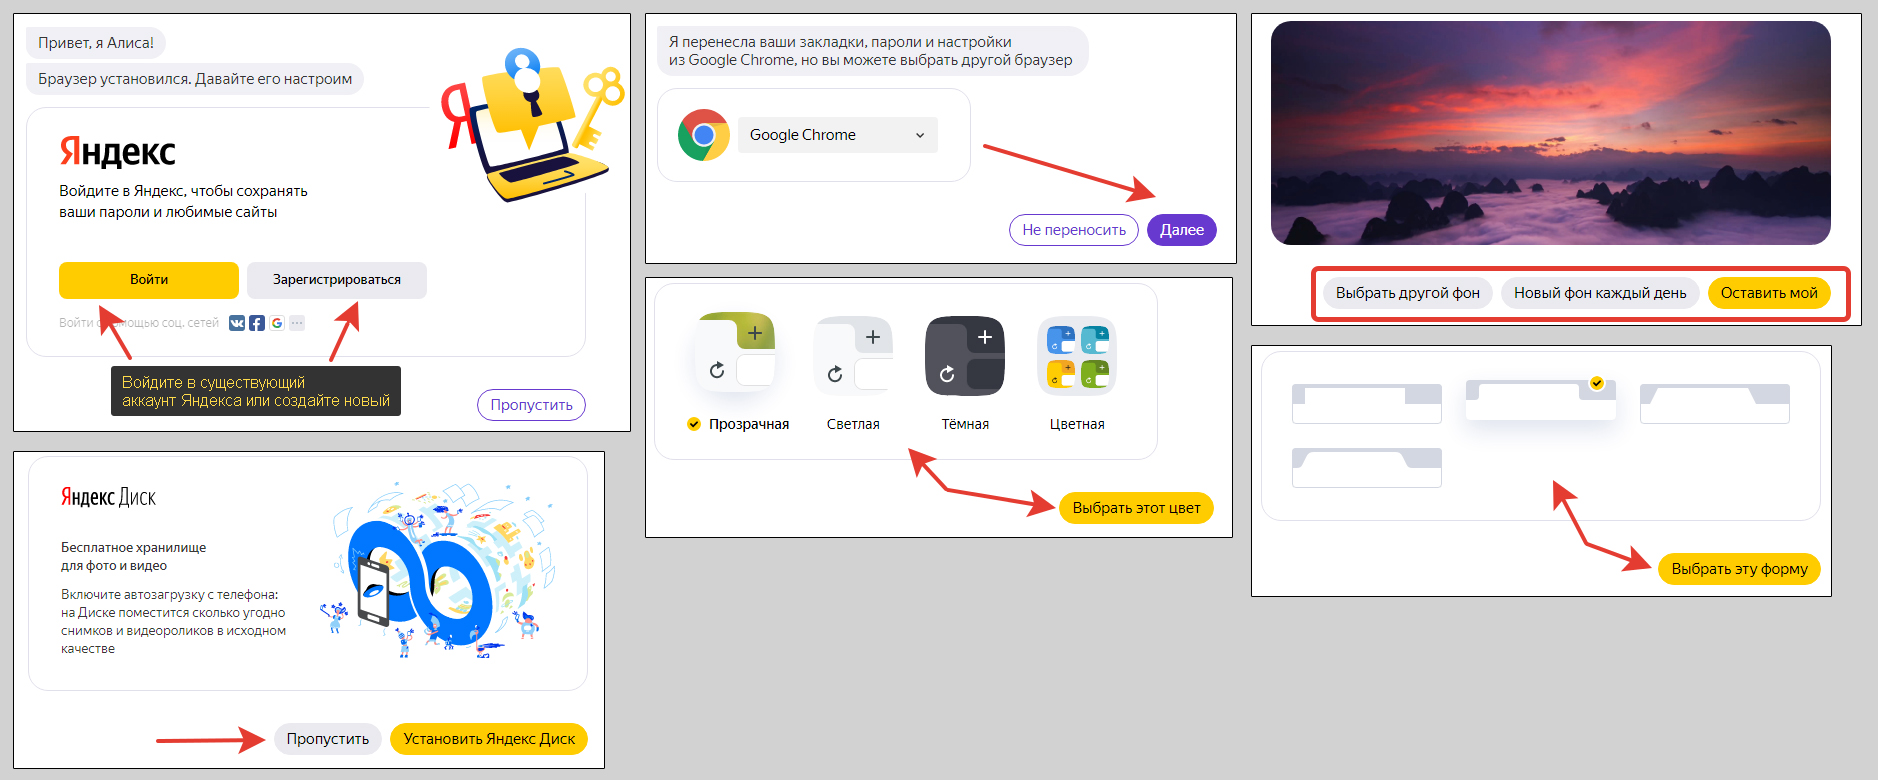 Этапы базовой настройки Яндекс браузера после установки.